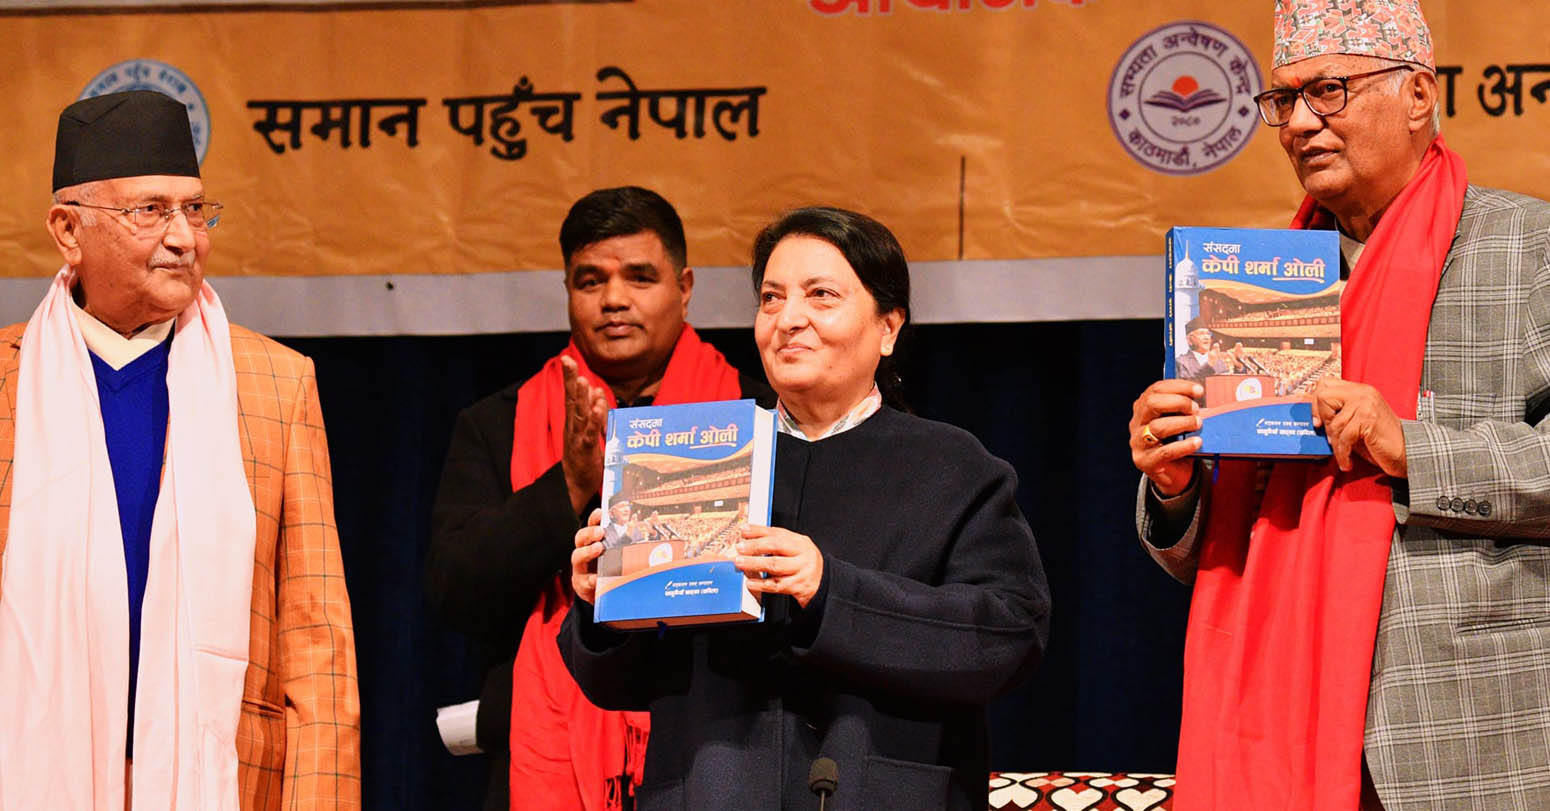 ओली समकालिन नेपाली राजनीतिका सर्वाधिक प्रतिभाशाली नेता हुनुहुन्छ : पूर्वराष्ट्रपति भण्डारी